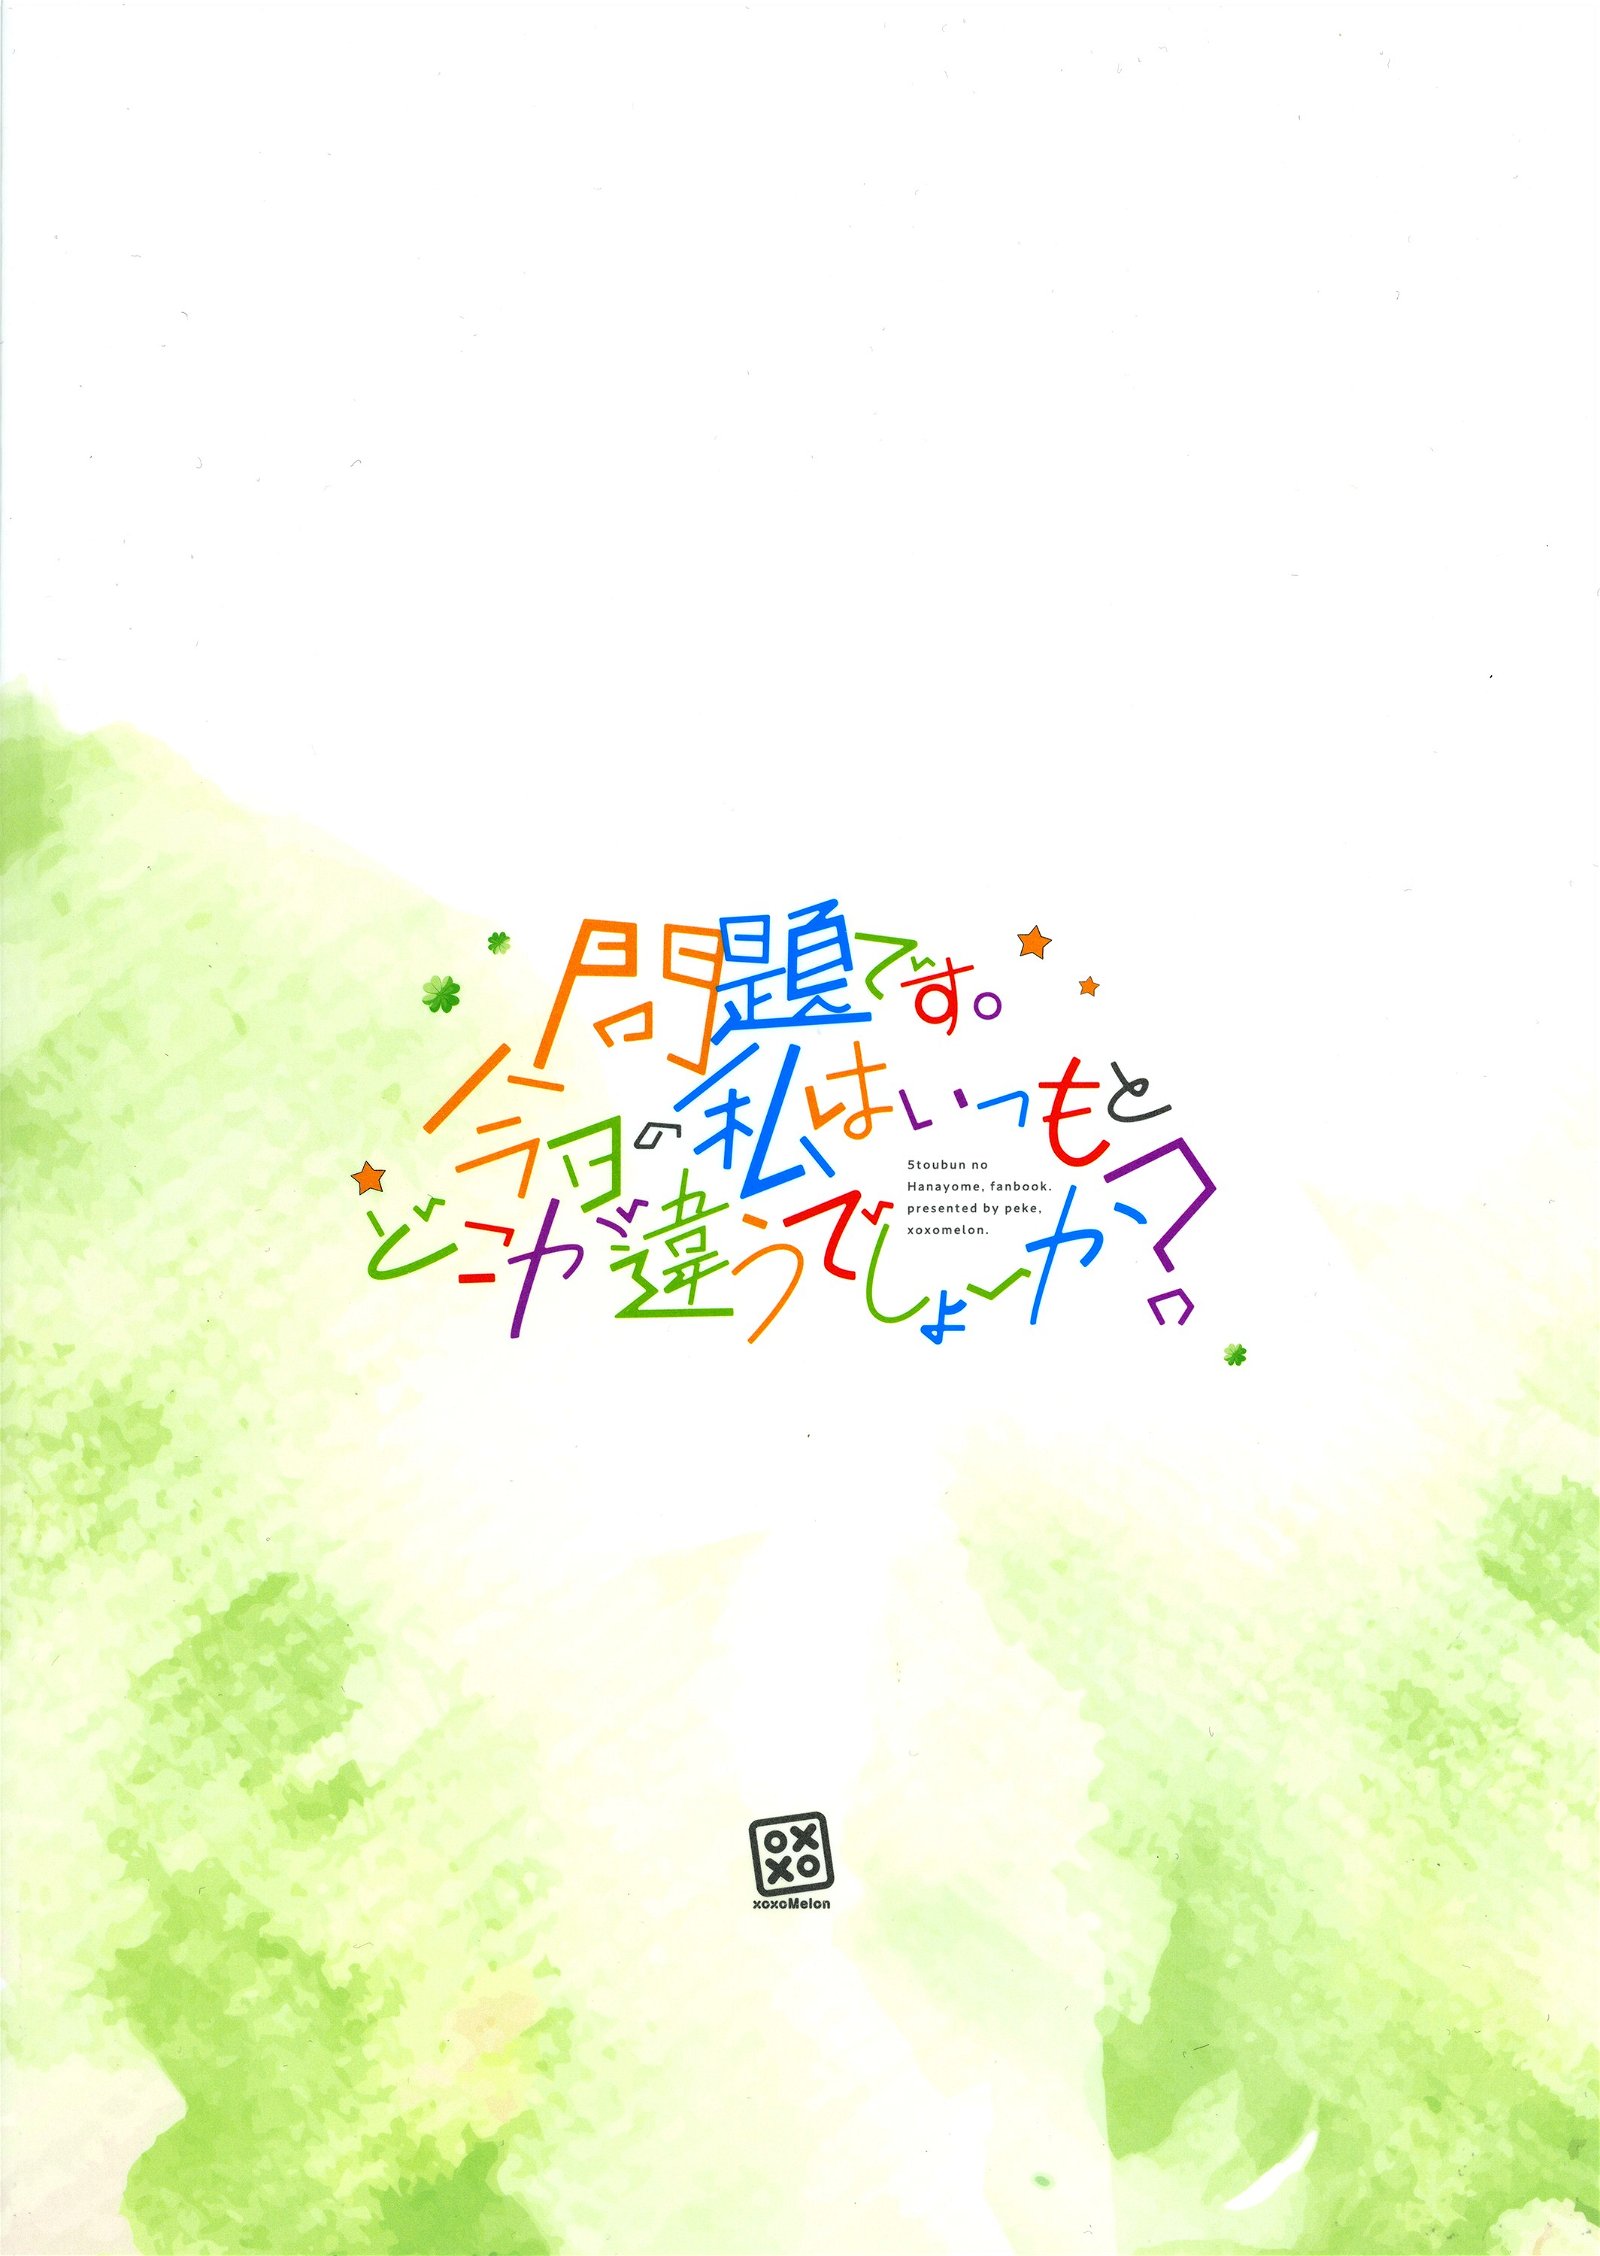 Baca Go-Toubun no Hanayome: Pop Quiz! (Yotsuba Doujinshi) Chapter 0  - GudangKomik